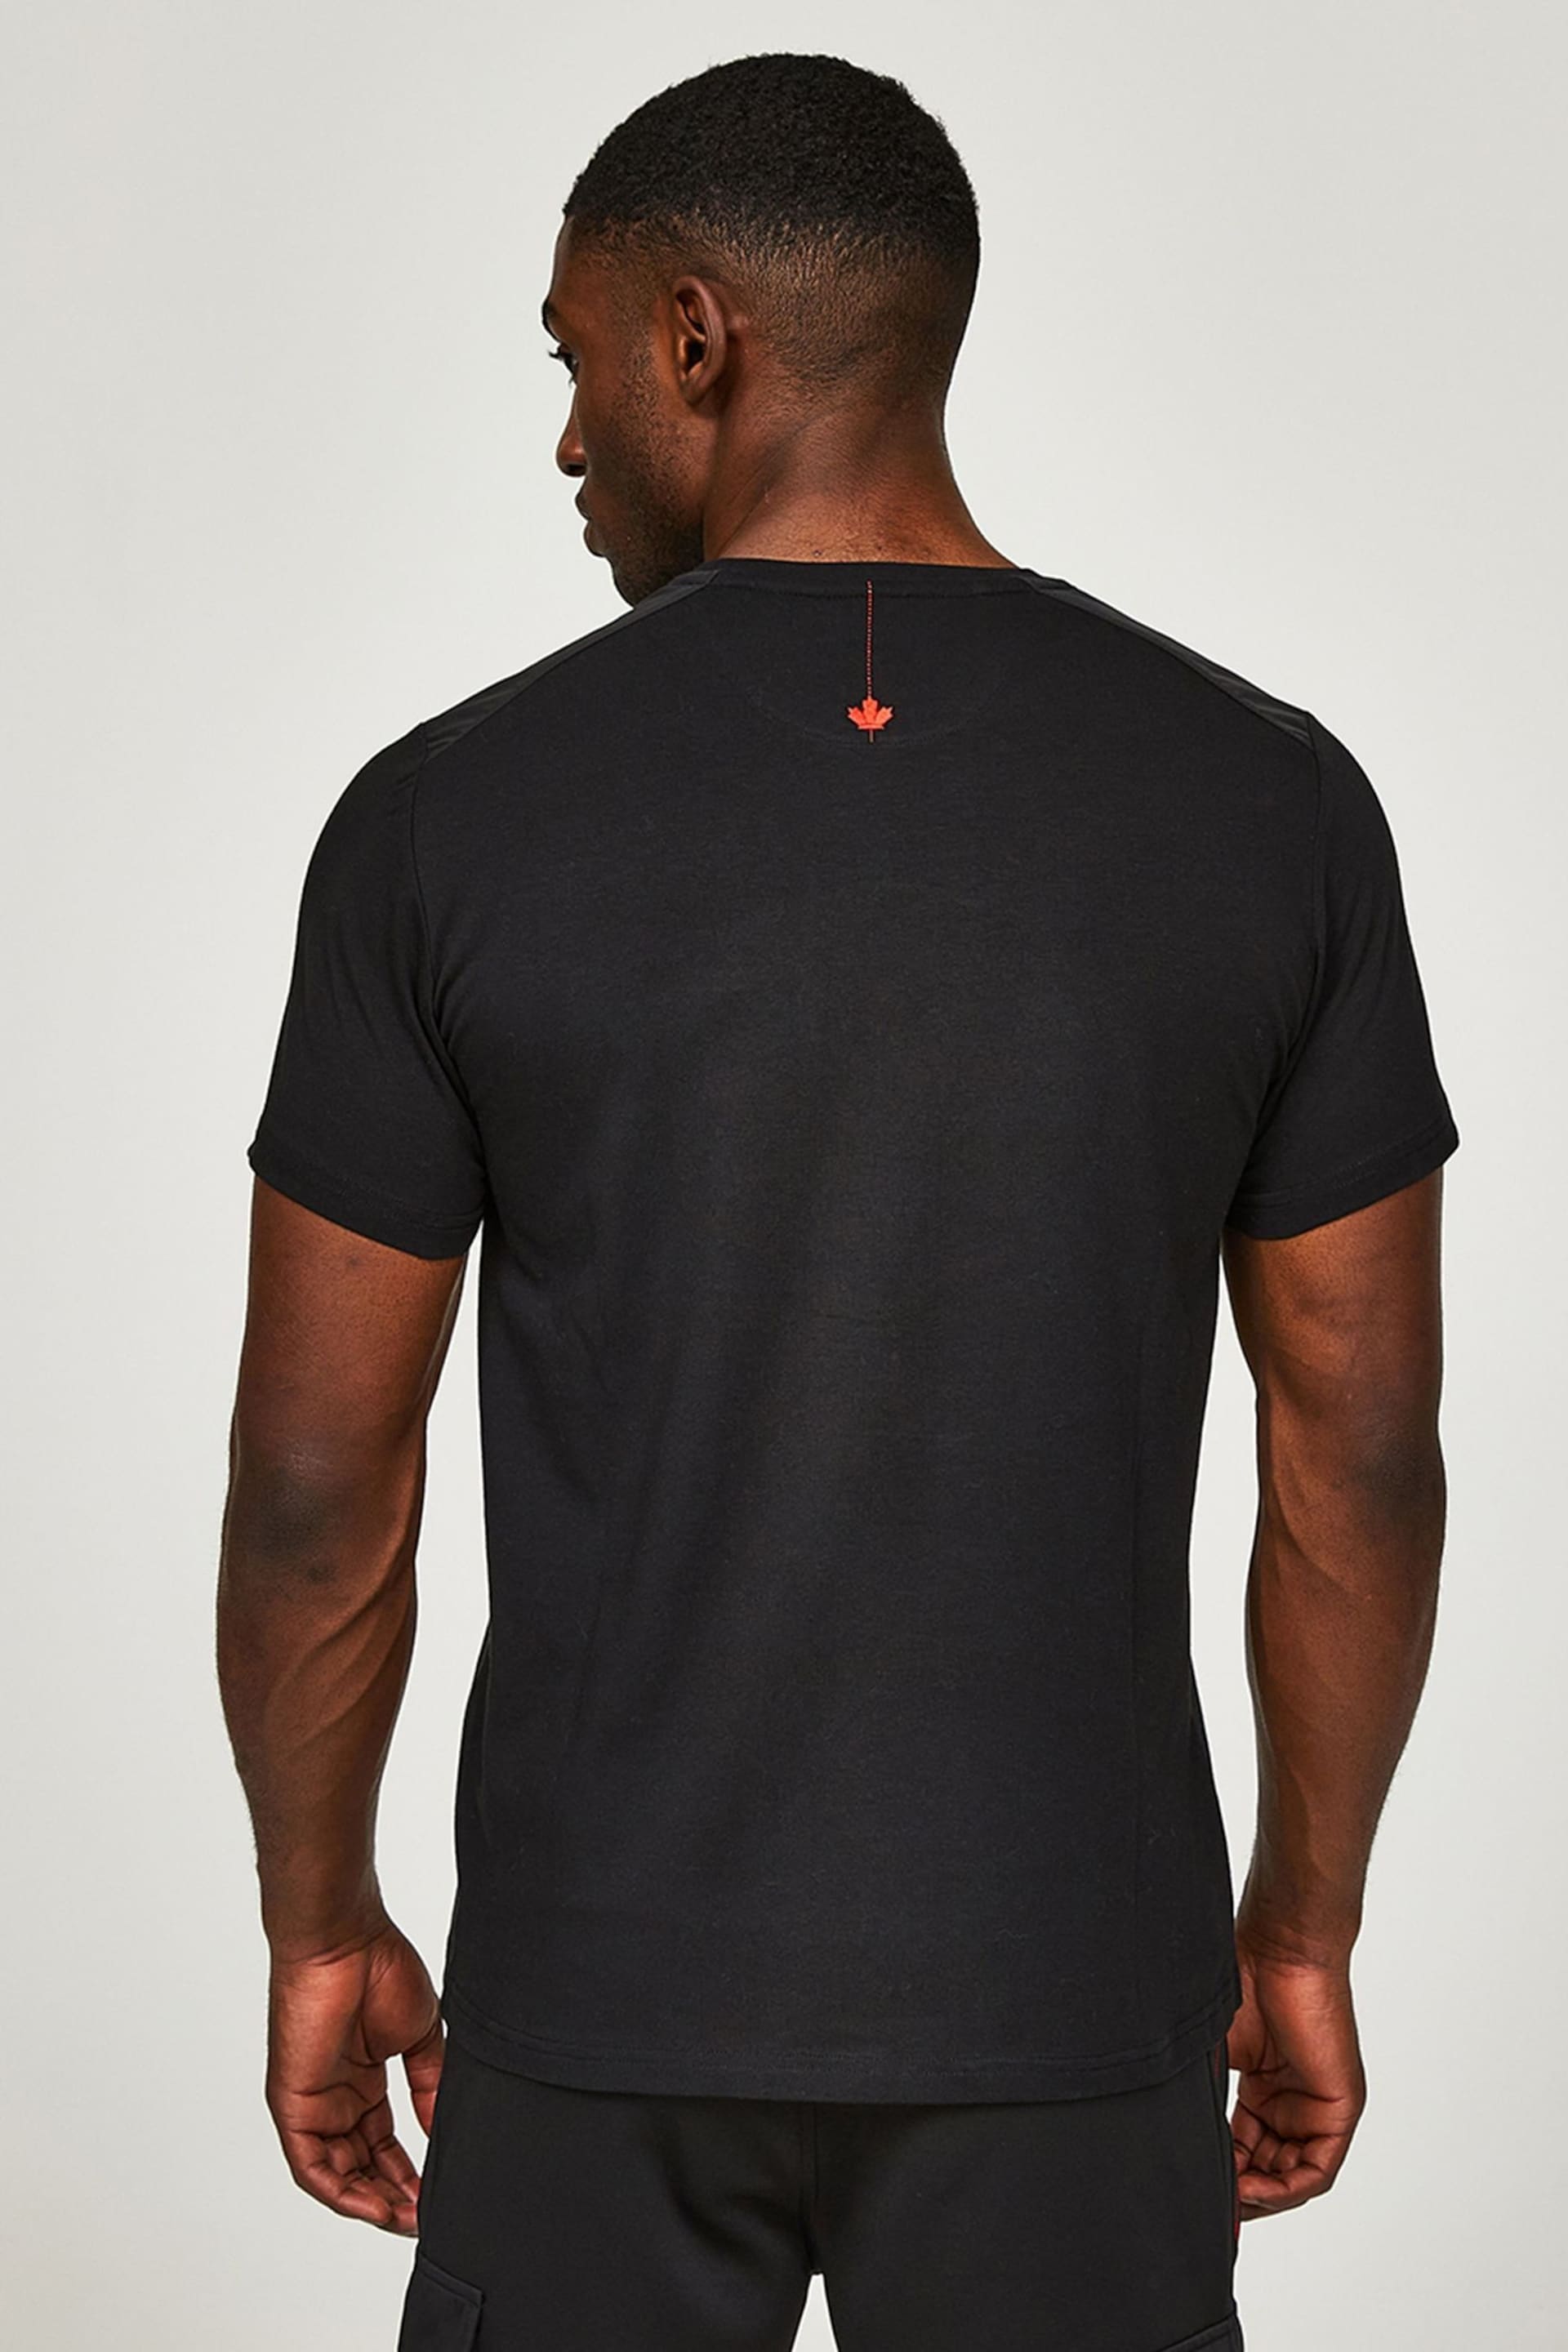 Zavetti Canada Black Levito T-Shirt - Image 2 of 6